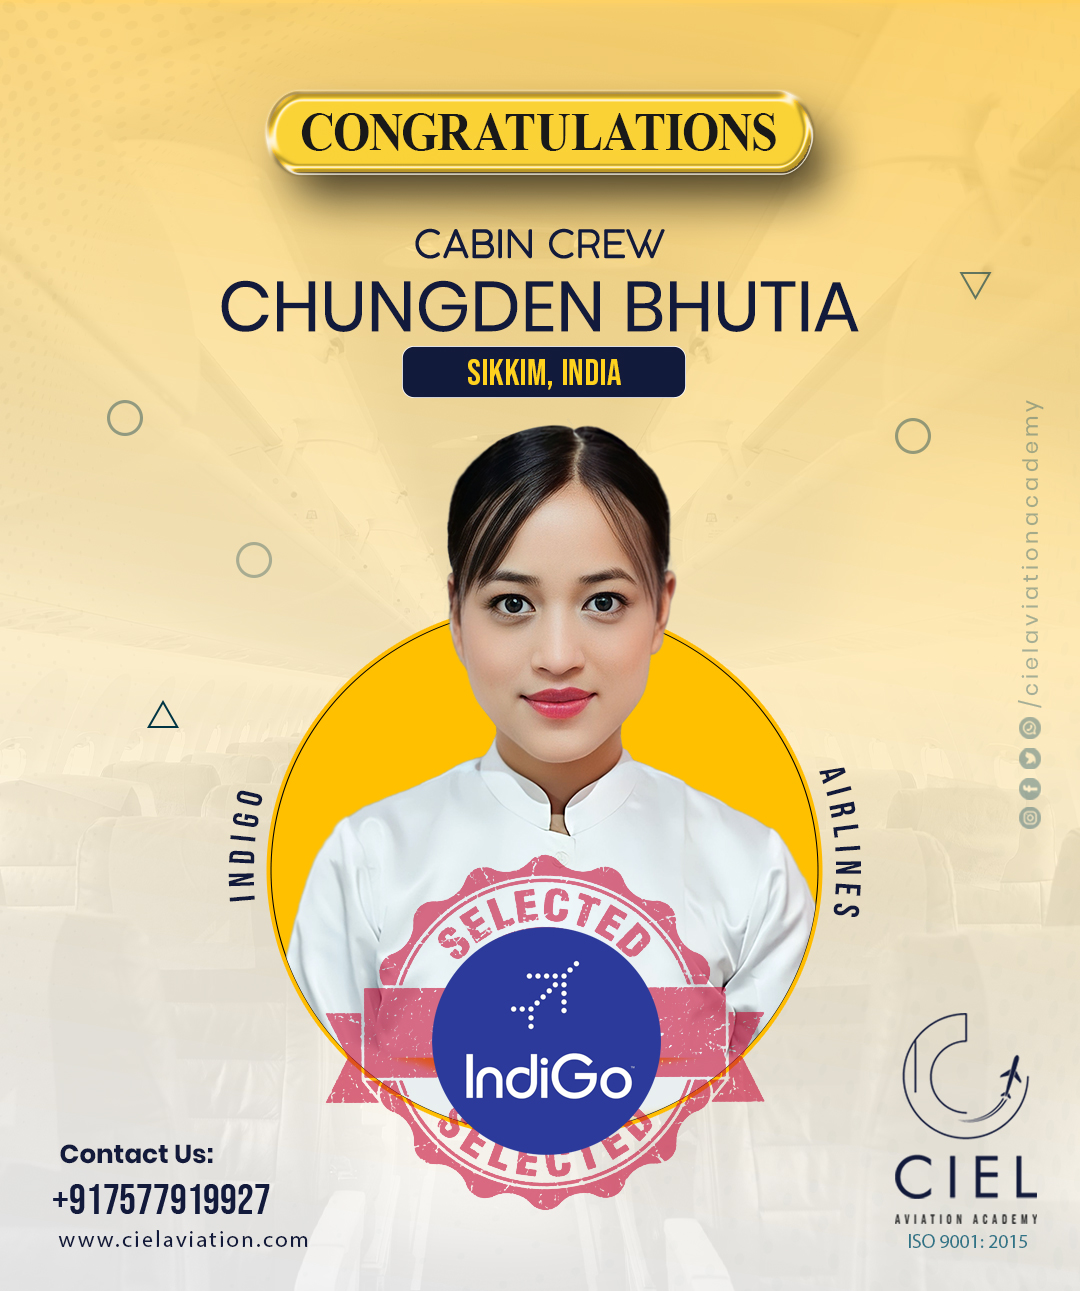 Ciel Aviation Academy - Chungden Bhutia